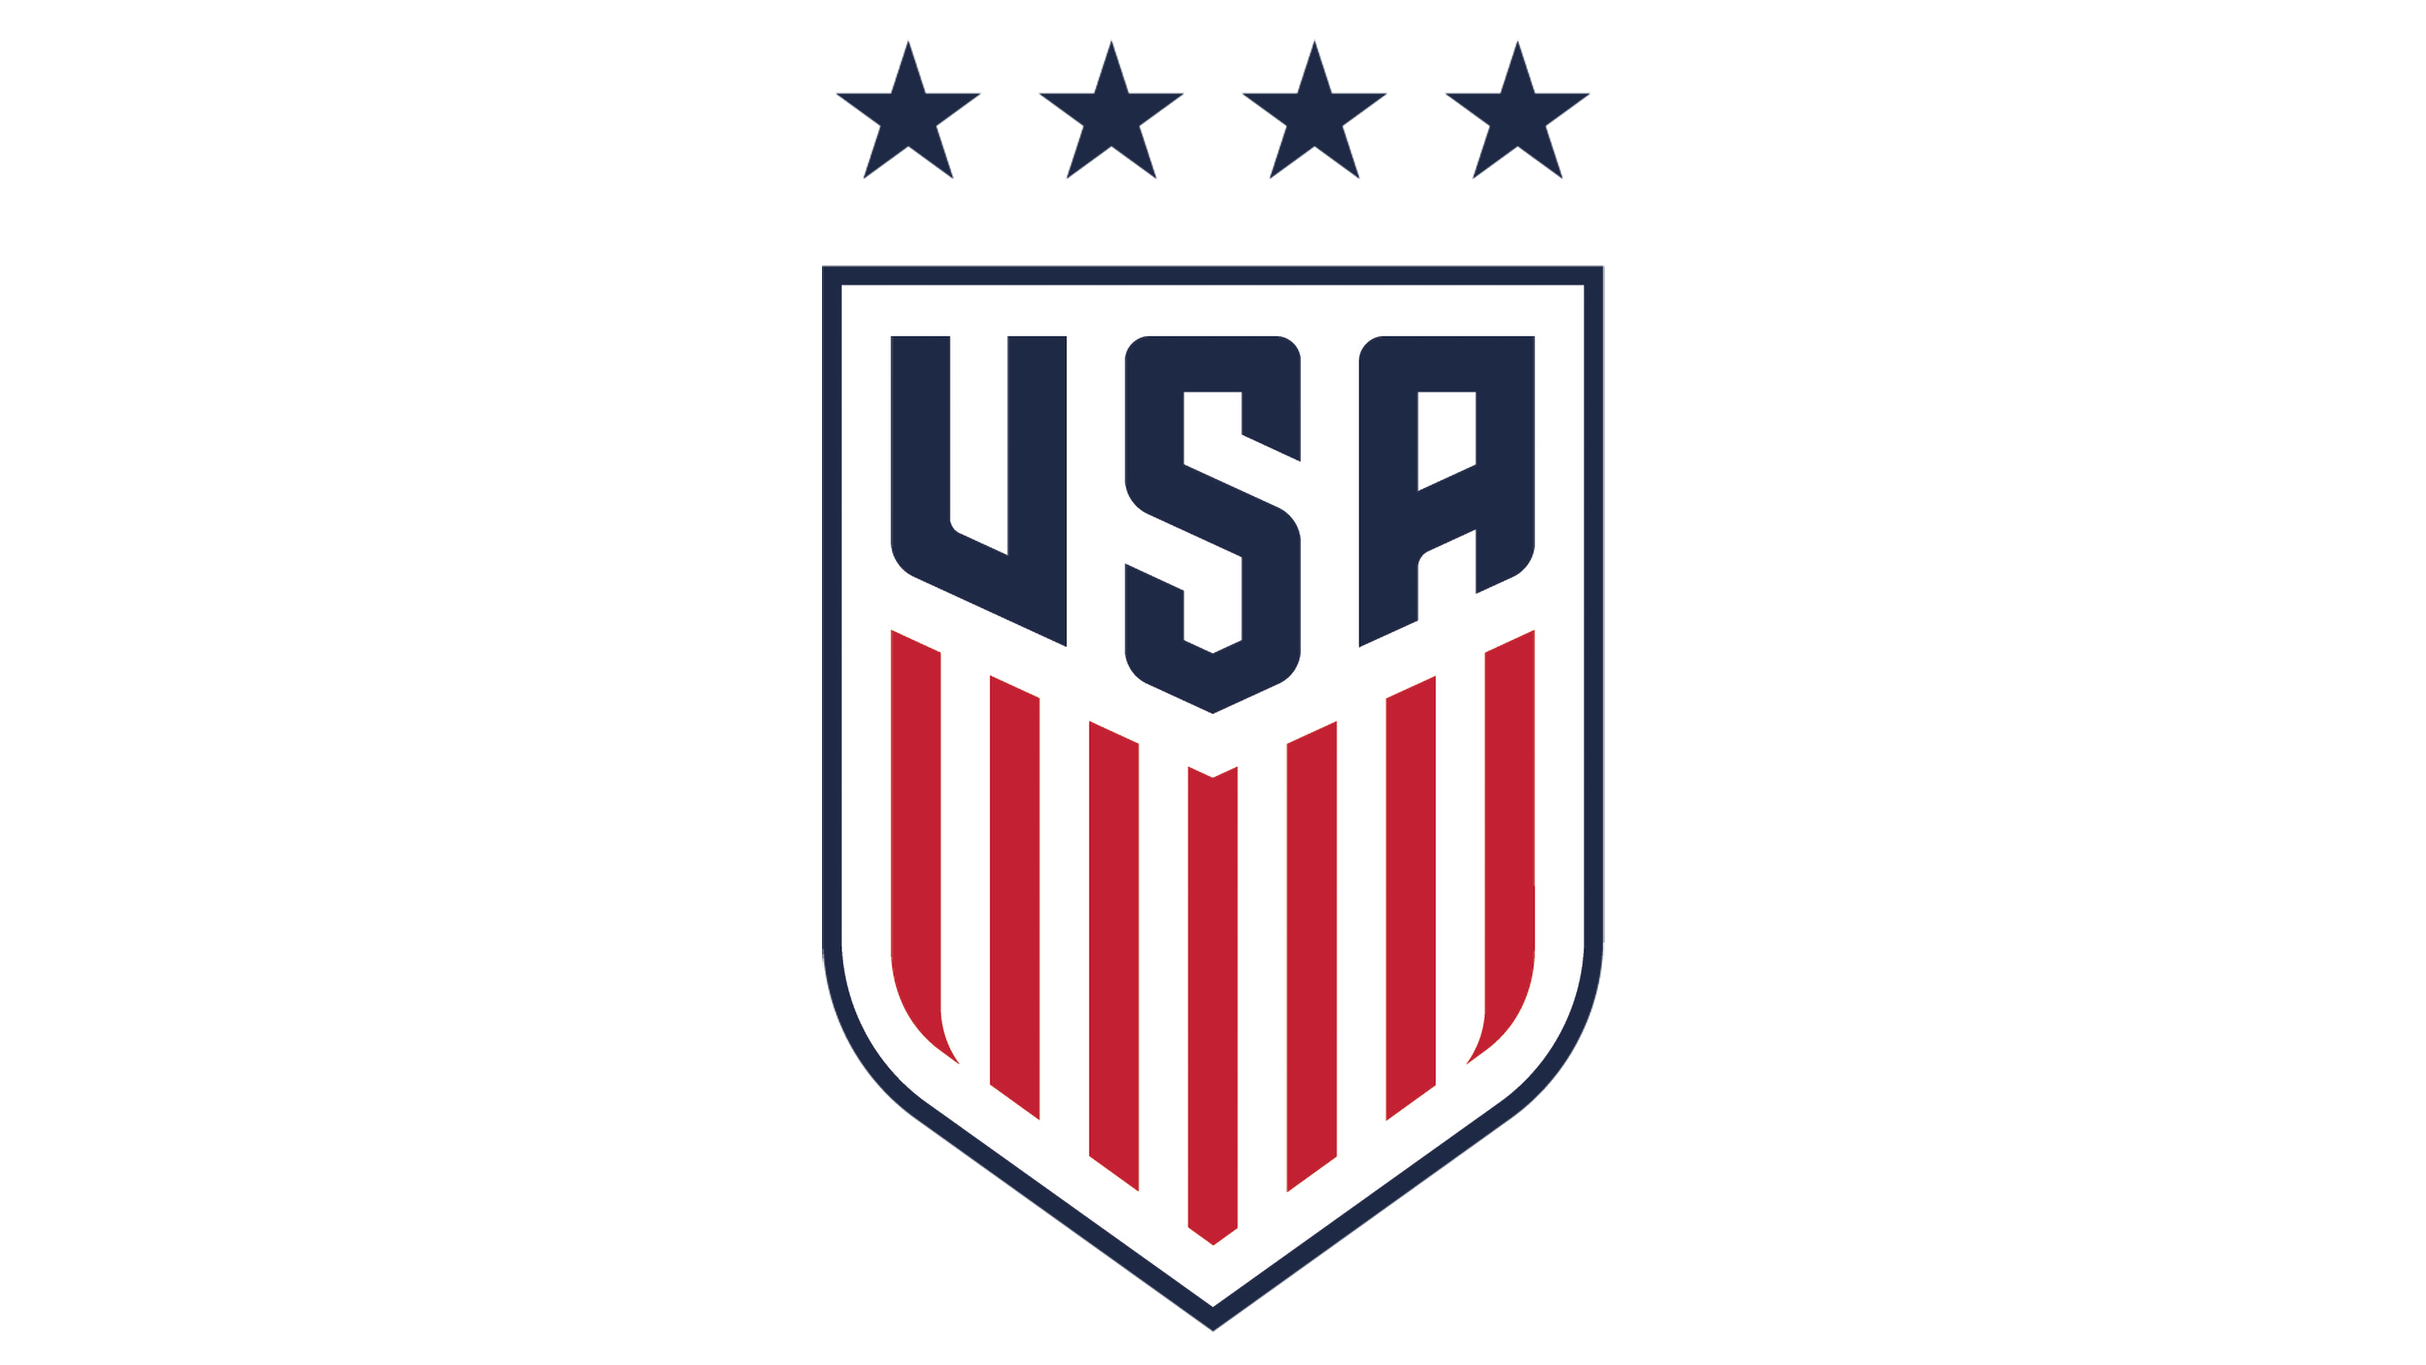 U.S. Women's National Soccer Team